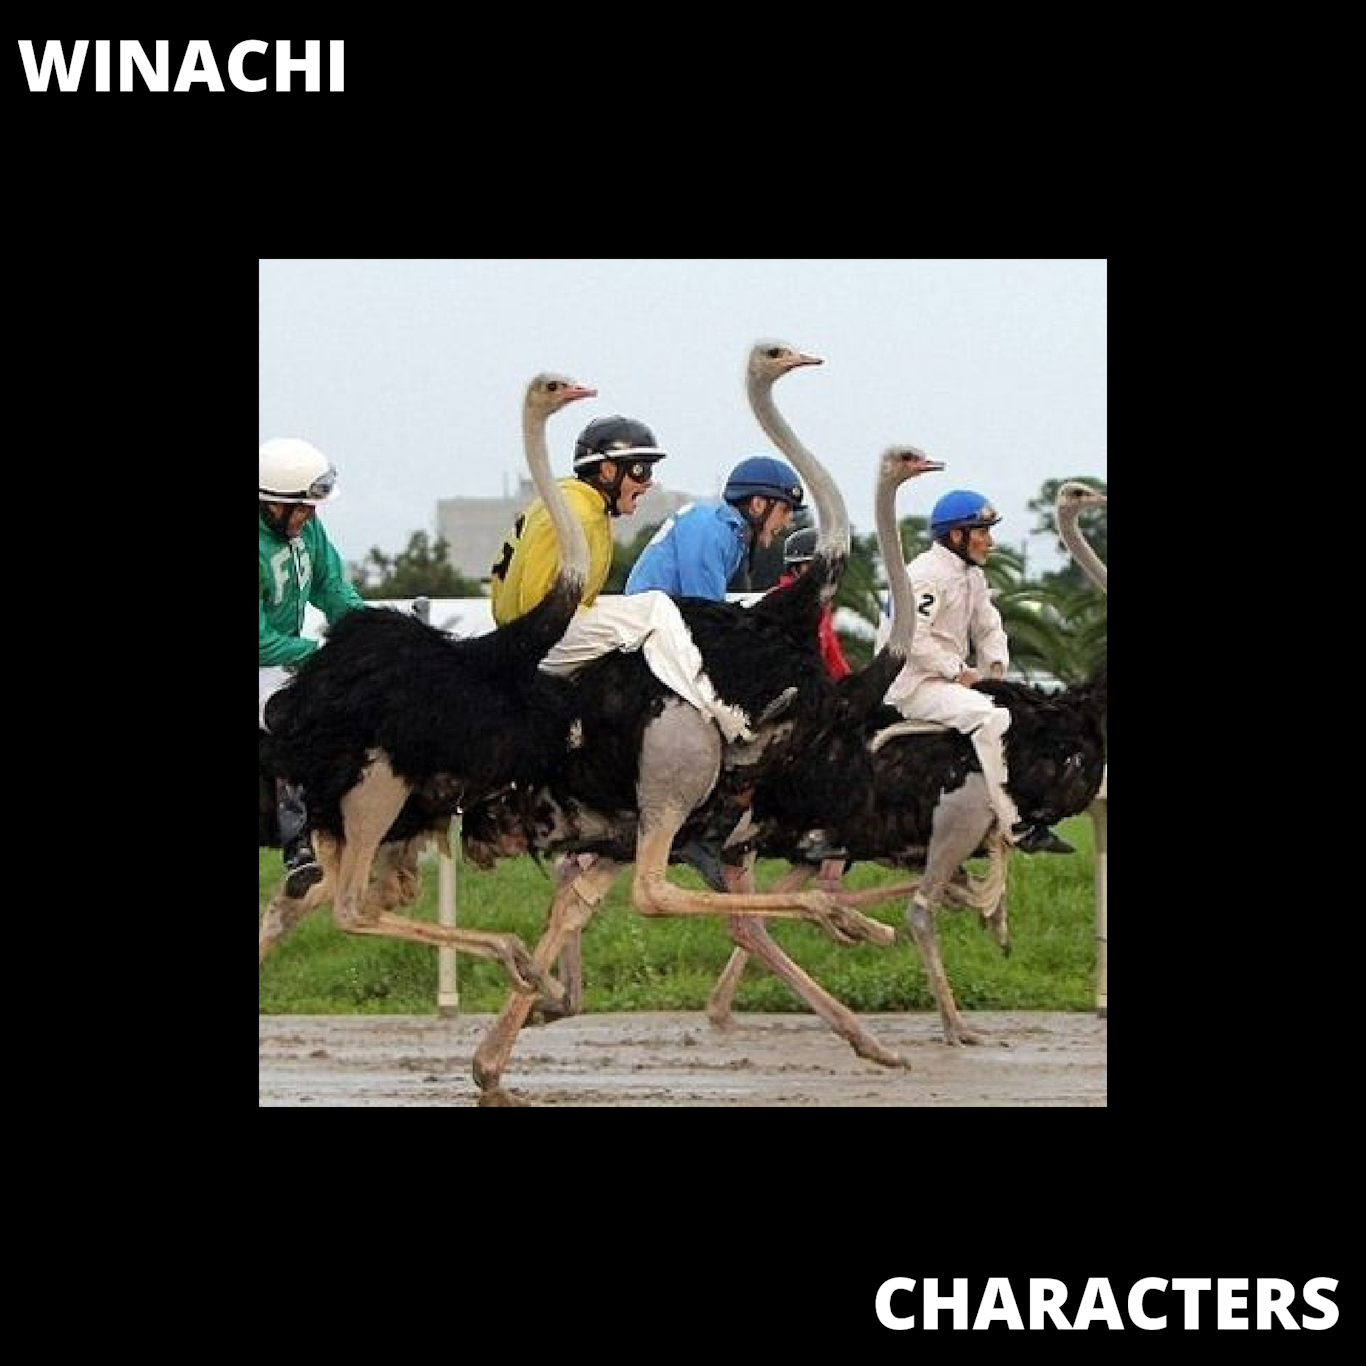 TRACK PREMIERE: Winachi - Characters 